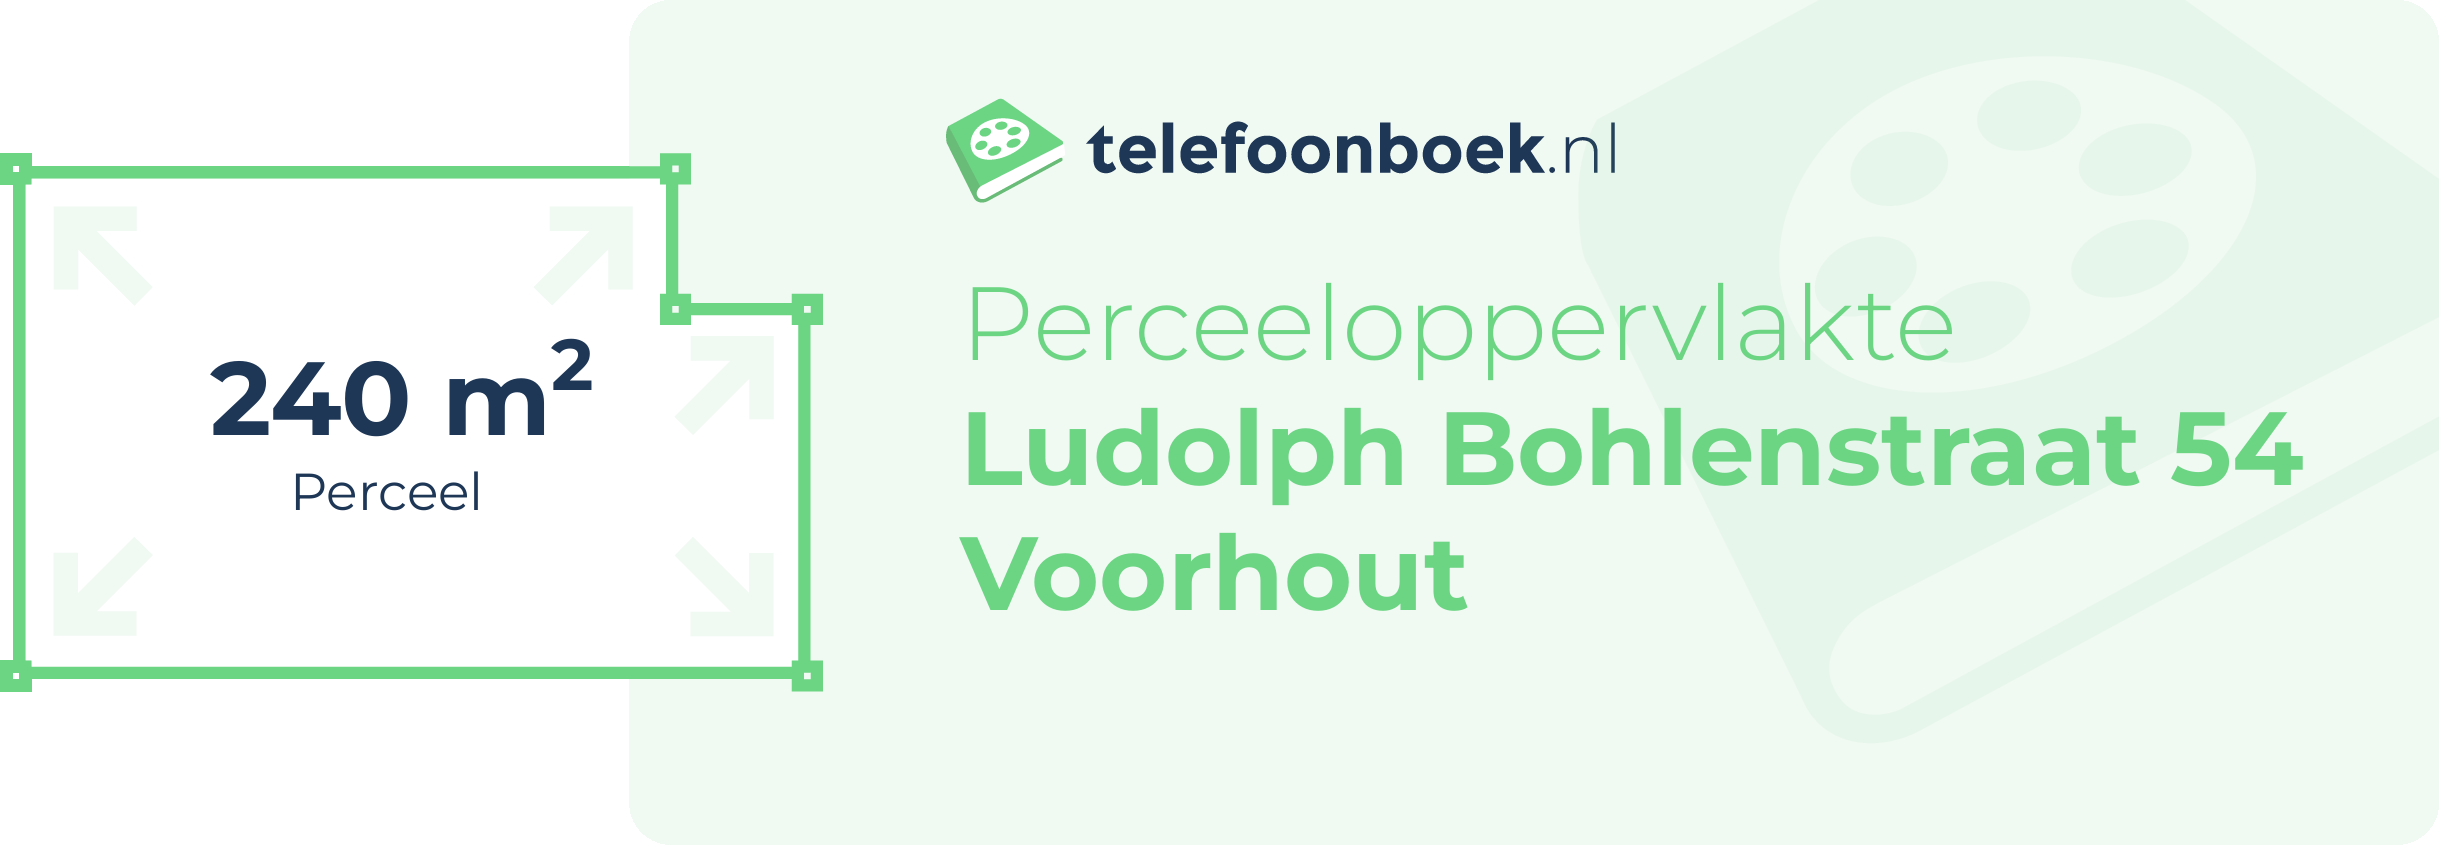 Perceeloppervlakte Ludolph Bohlenstraat 54 Voorhout